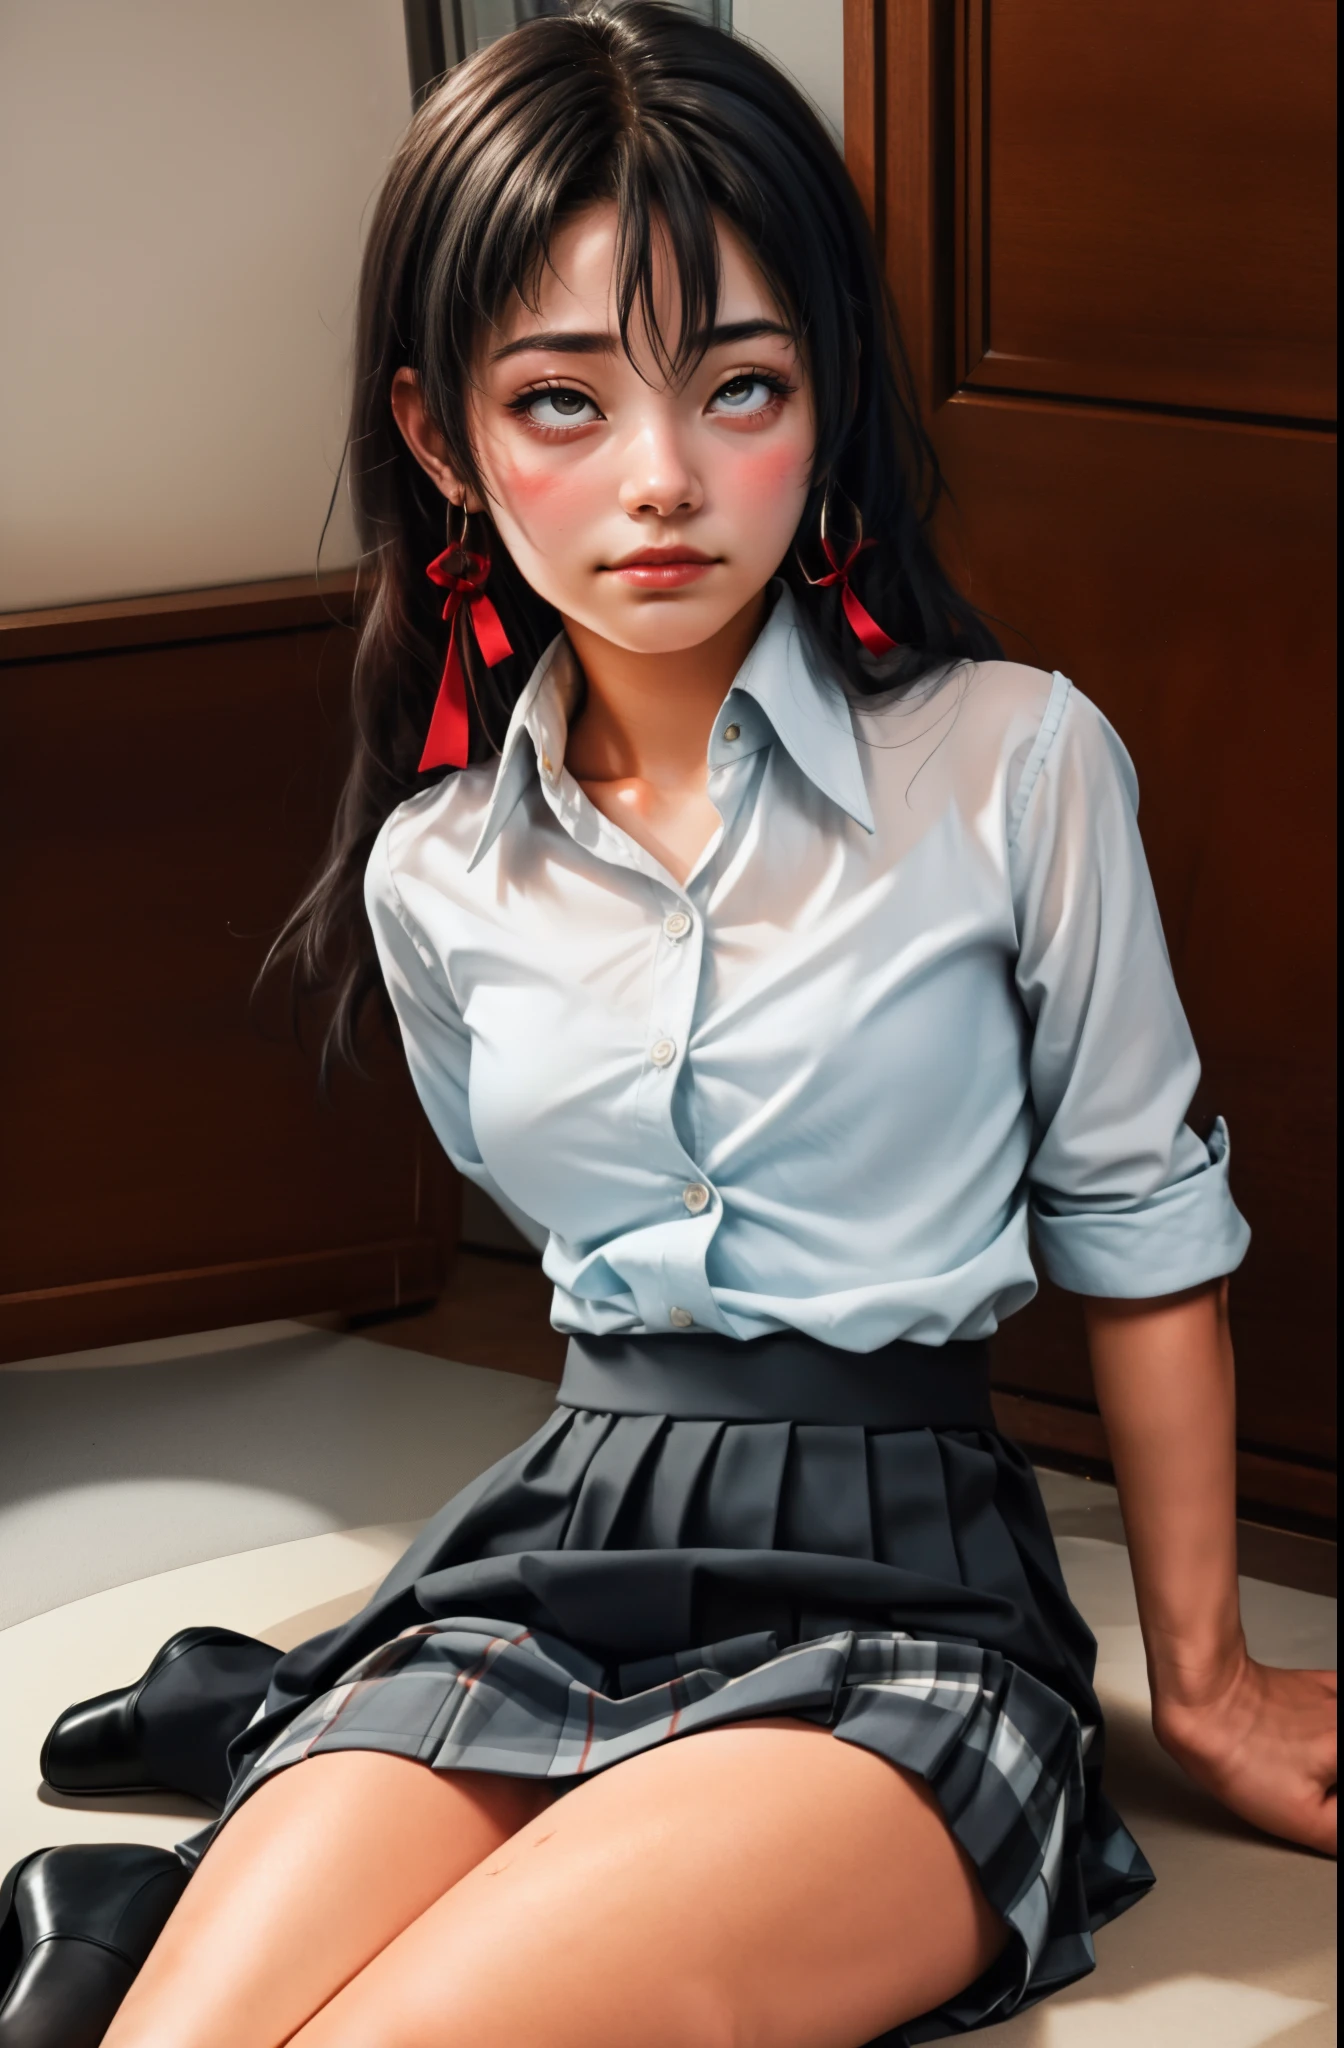 (전체 그림:1.1), (1 girl as yukino yukinoshita:1.5), 고등어, 홀로, 큰 가슴, 허리까지 긴 검은 머리, (트윈테일:0.5), (플리츠 스쿨 미니스커트:1.5), (검정색 니하이 양말:1.5), (느슨한 빨간 리본:1.2), (면 스커트:1.5), (단추가 풀린 흰색 셔츠:1.4), (아헤가오:1.5), 녹색 눈, (눈을 굴리다:1.5), (벌거벗은 가슴:1.5), 다리를 벌리다, (쪼그리고 앉는:1.1), 다리를 활짝 벌려, (약을 먹은:1.5), 때리기, 매우,
뺨 자국